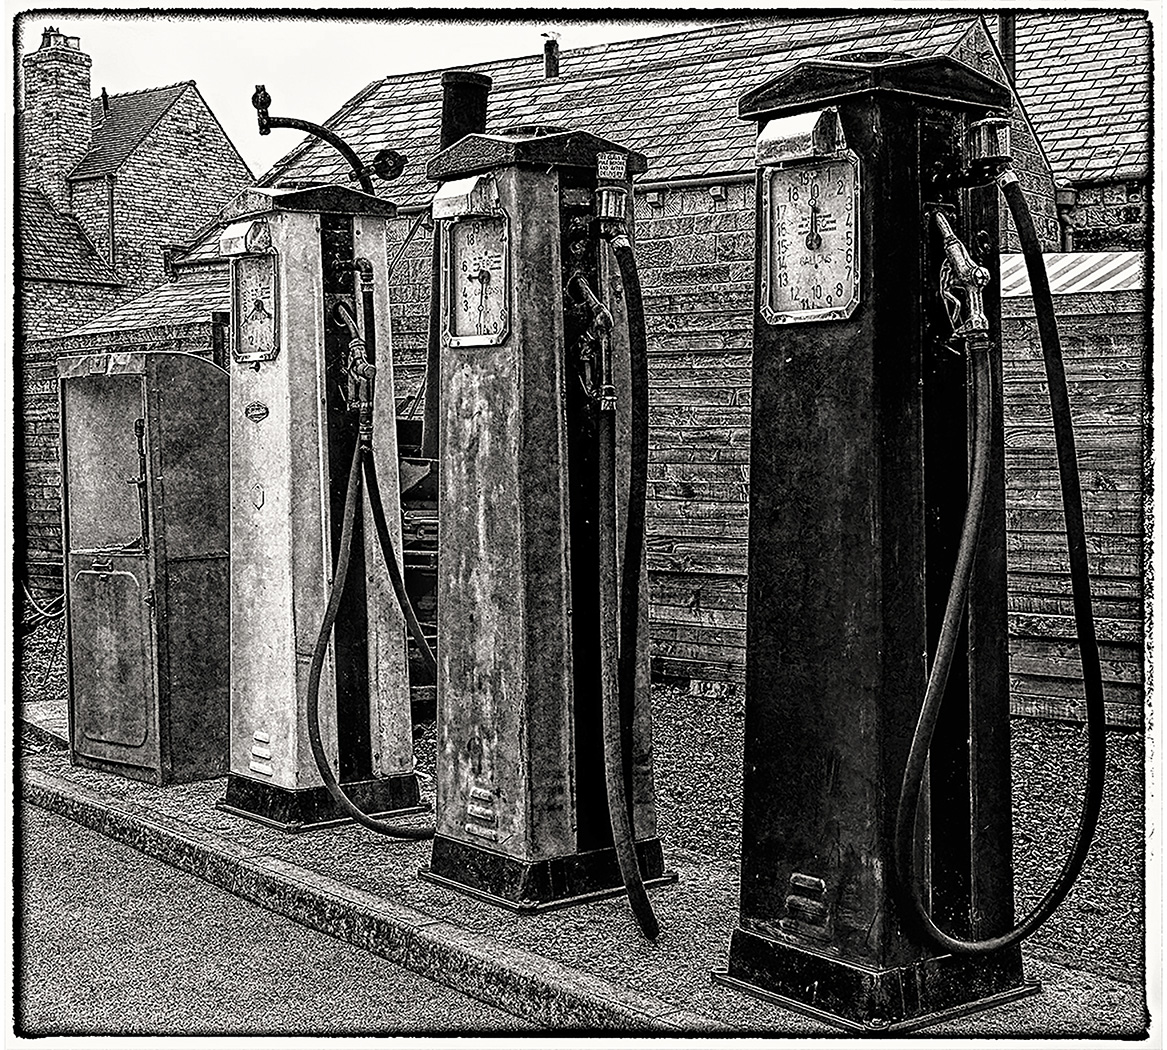 Petrol Pumps by Brian Magor, APSA, MPSA